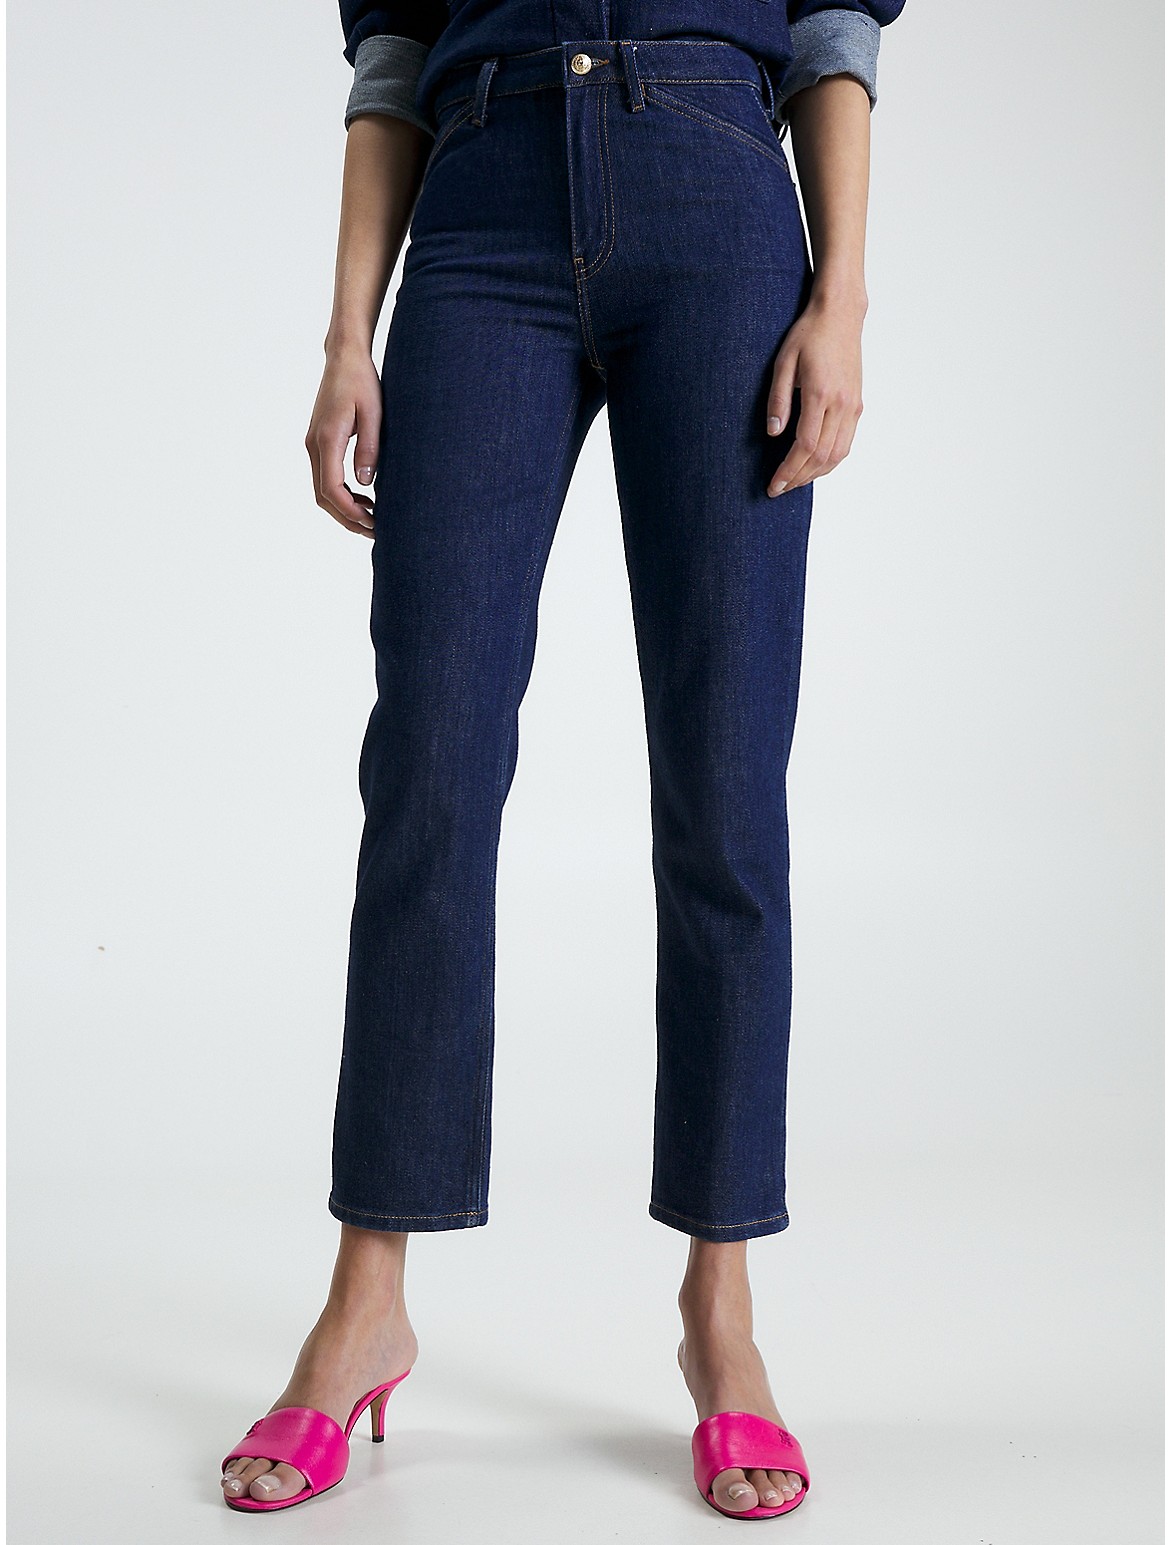 Tommy Hilfiger Women's High-Waist Straight Fit Jean - Blue - 25W x 32L